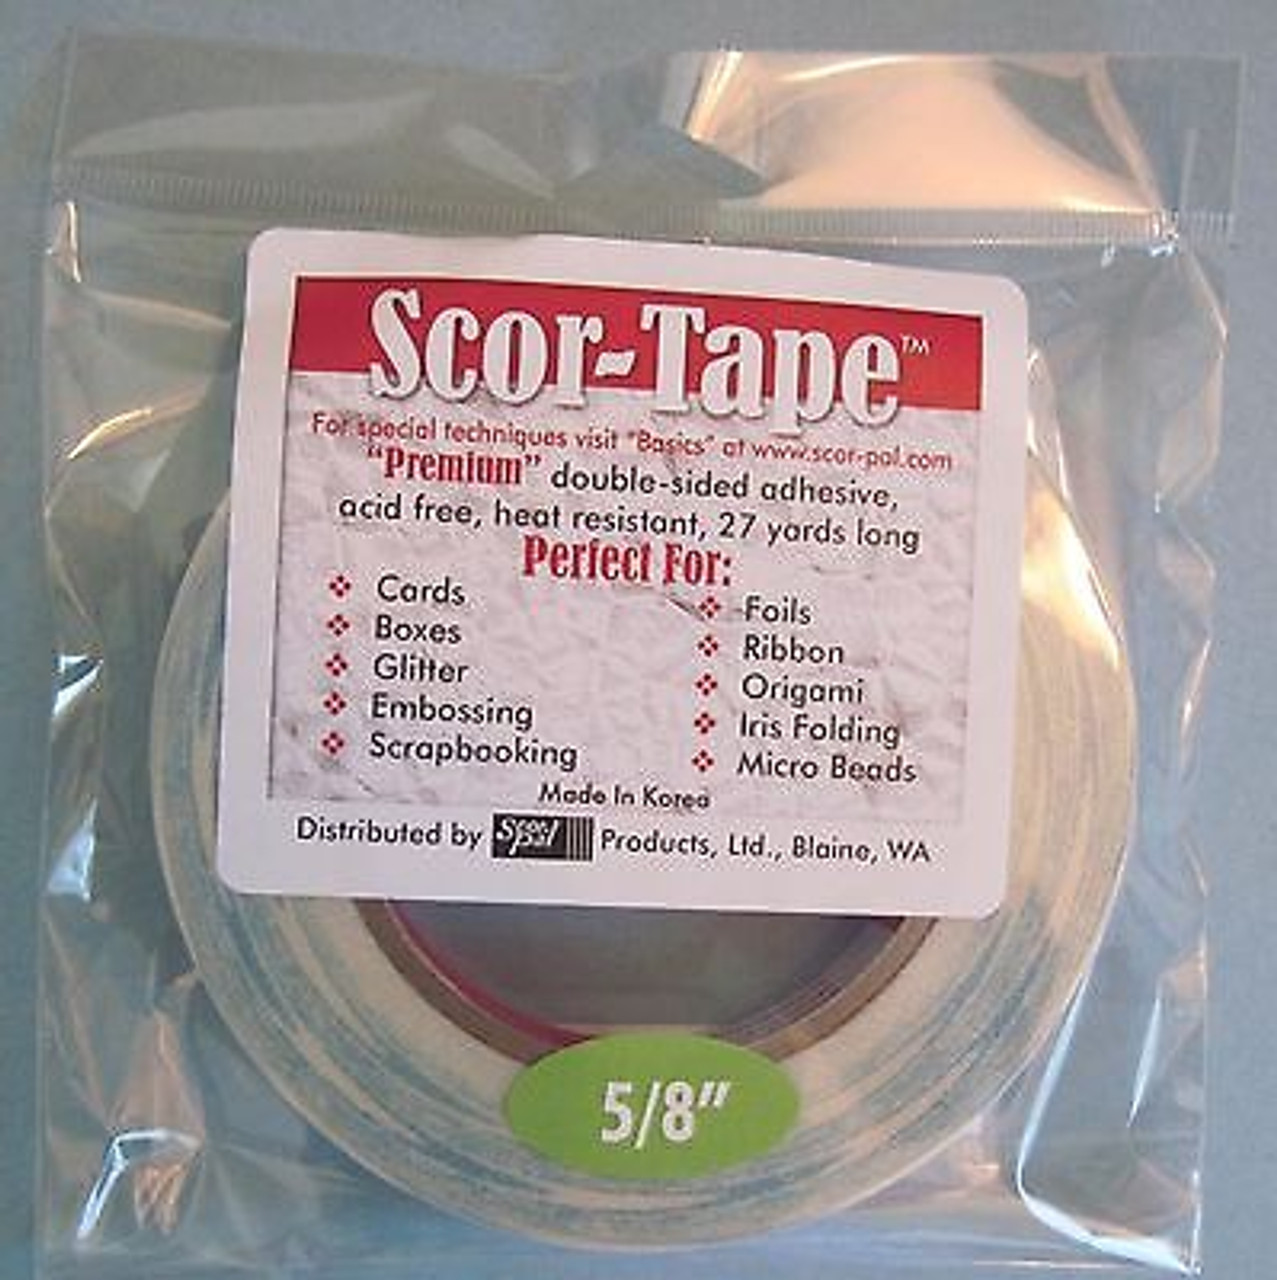 Scor-pal: The perfect Scor-Tape dispenser